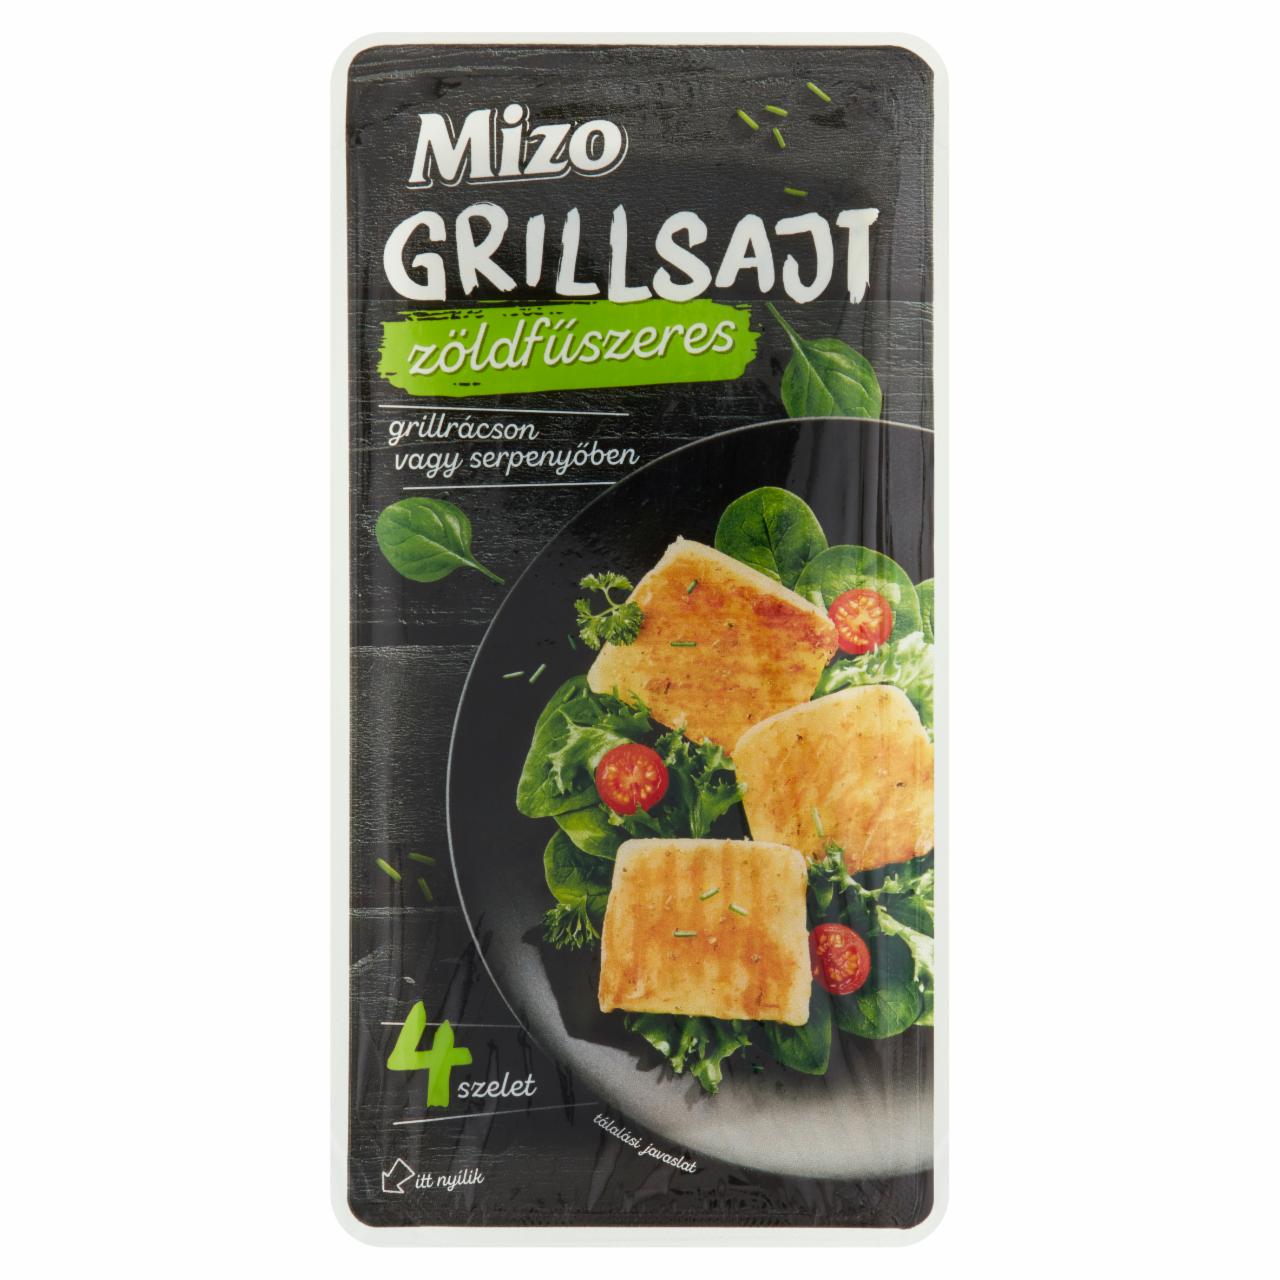 Képek - Mizo zöldfűszeres darabolt grillsajt 4 db 310 g